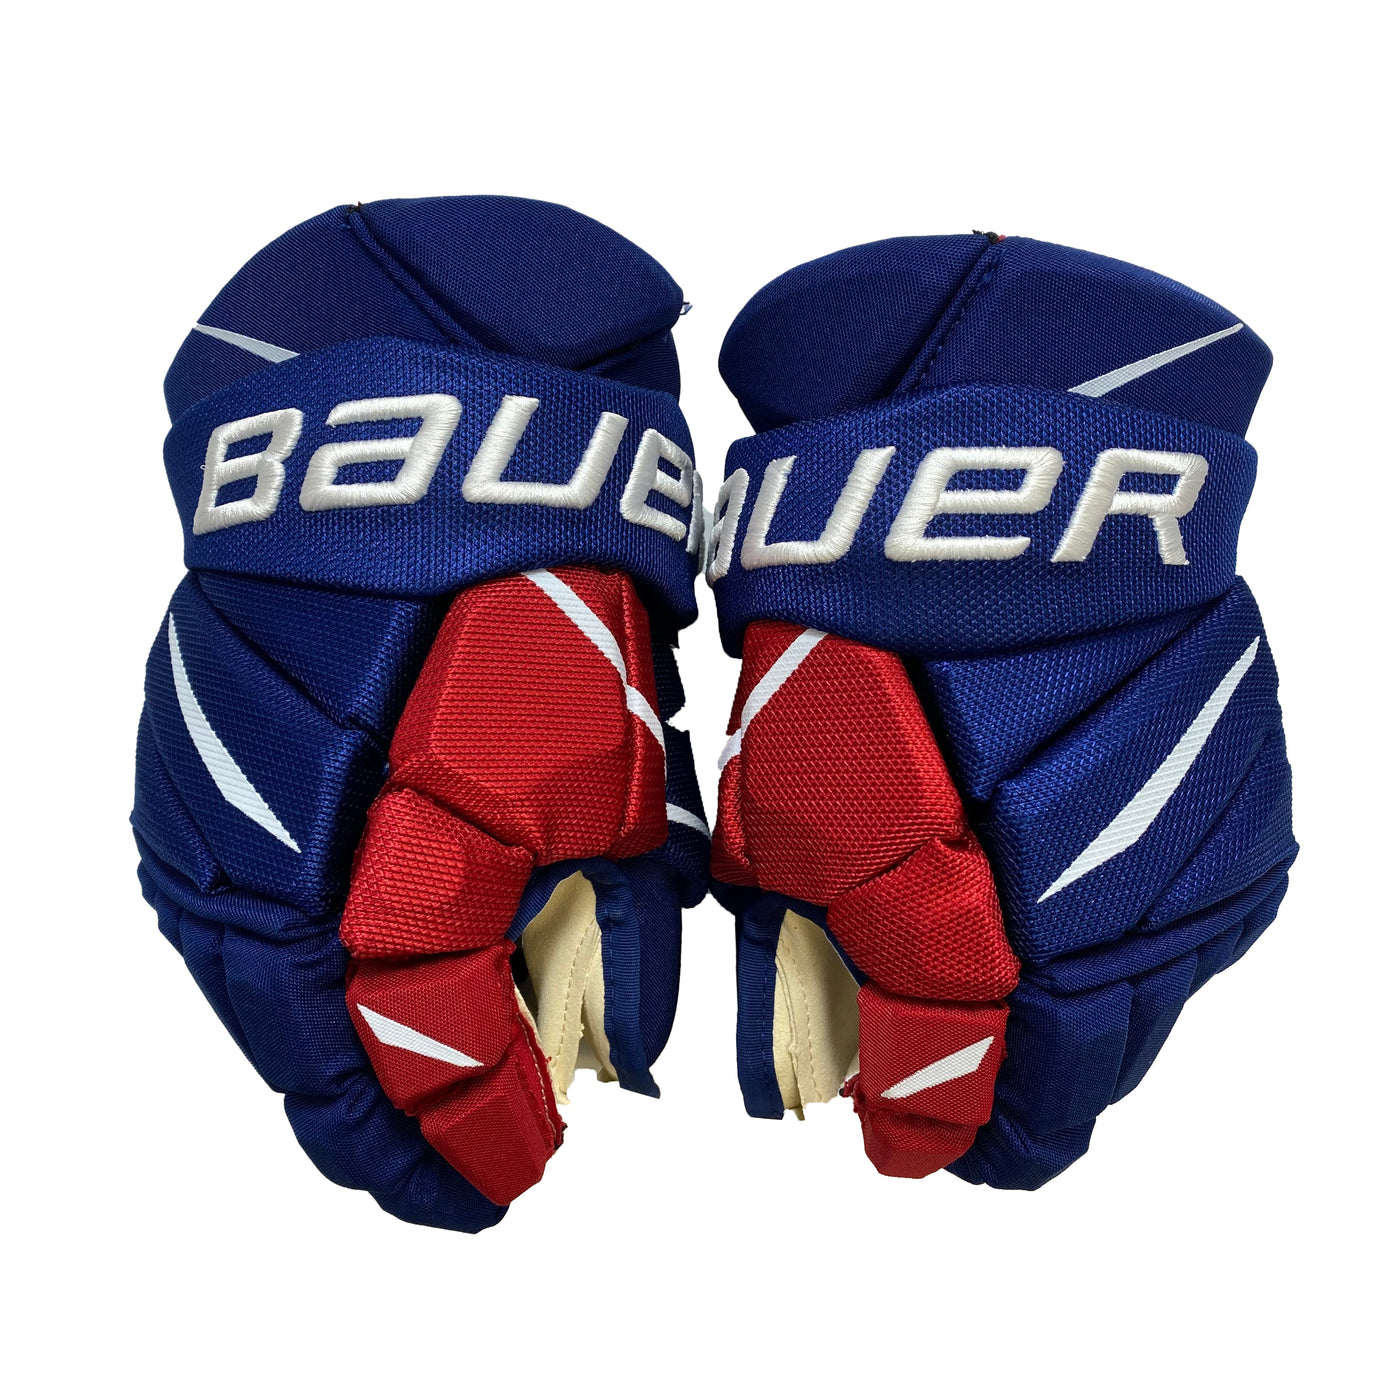 Bauer Vapor 2X Pro IIHF Worlds Czech Republic Pro Stock Glove